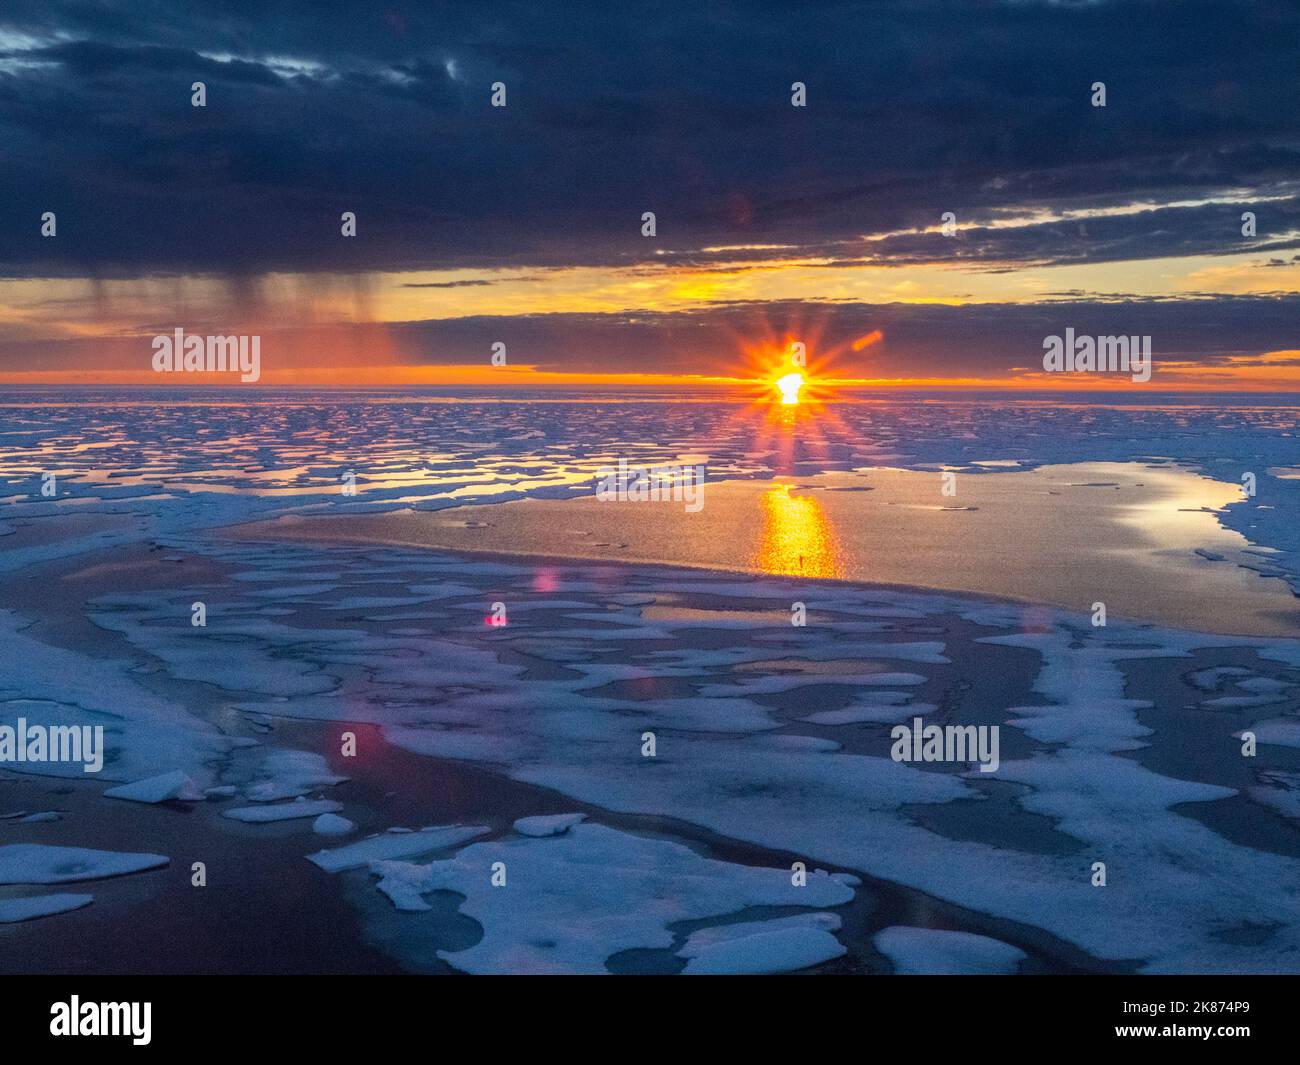 Averses de soleil et de pluie dans la glace épaisse du chenal McClintock, passage du Nord-Ouest, Nunavut, Canada, Amérique du Nord Banque D'Images